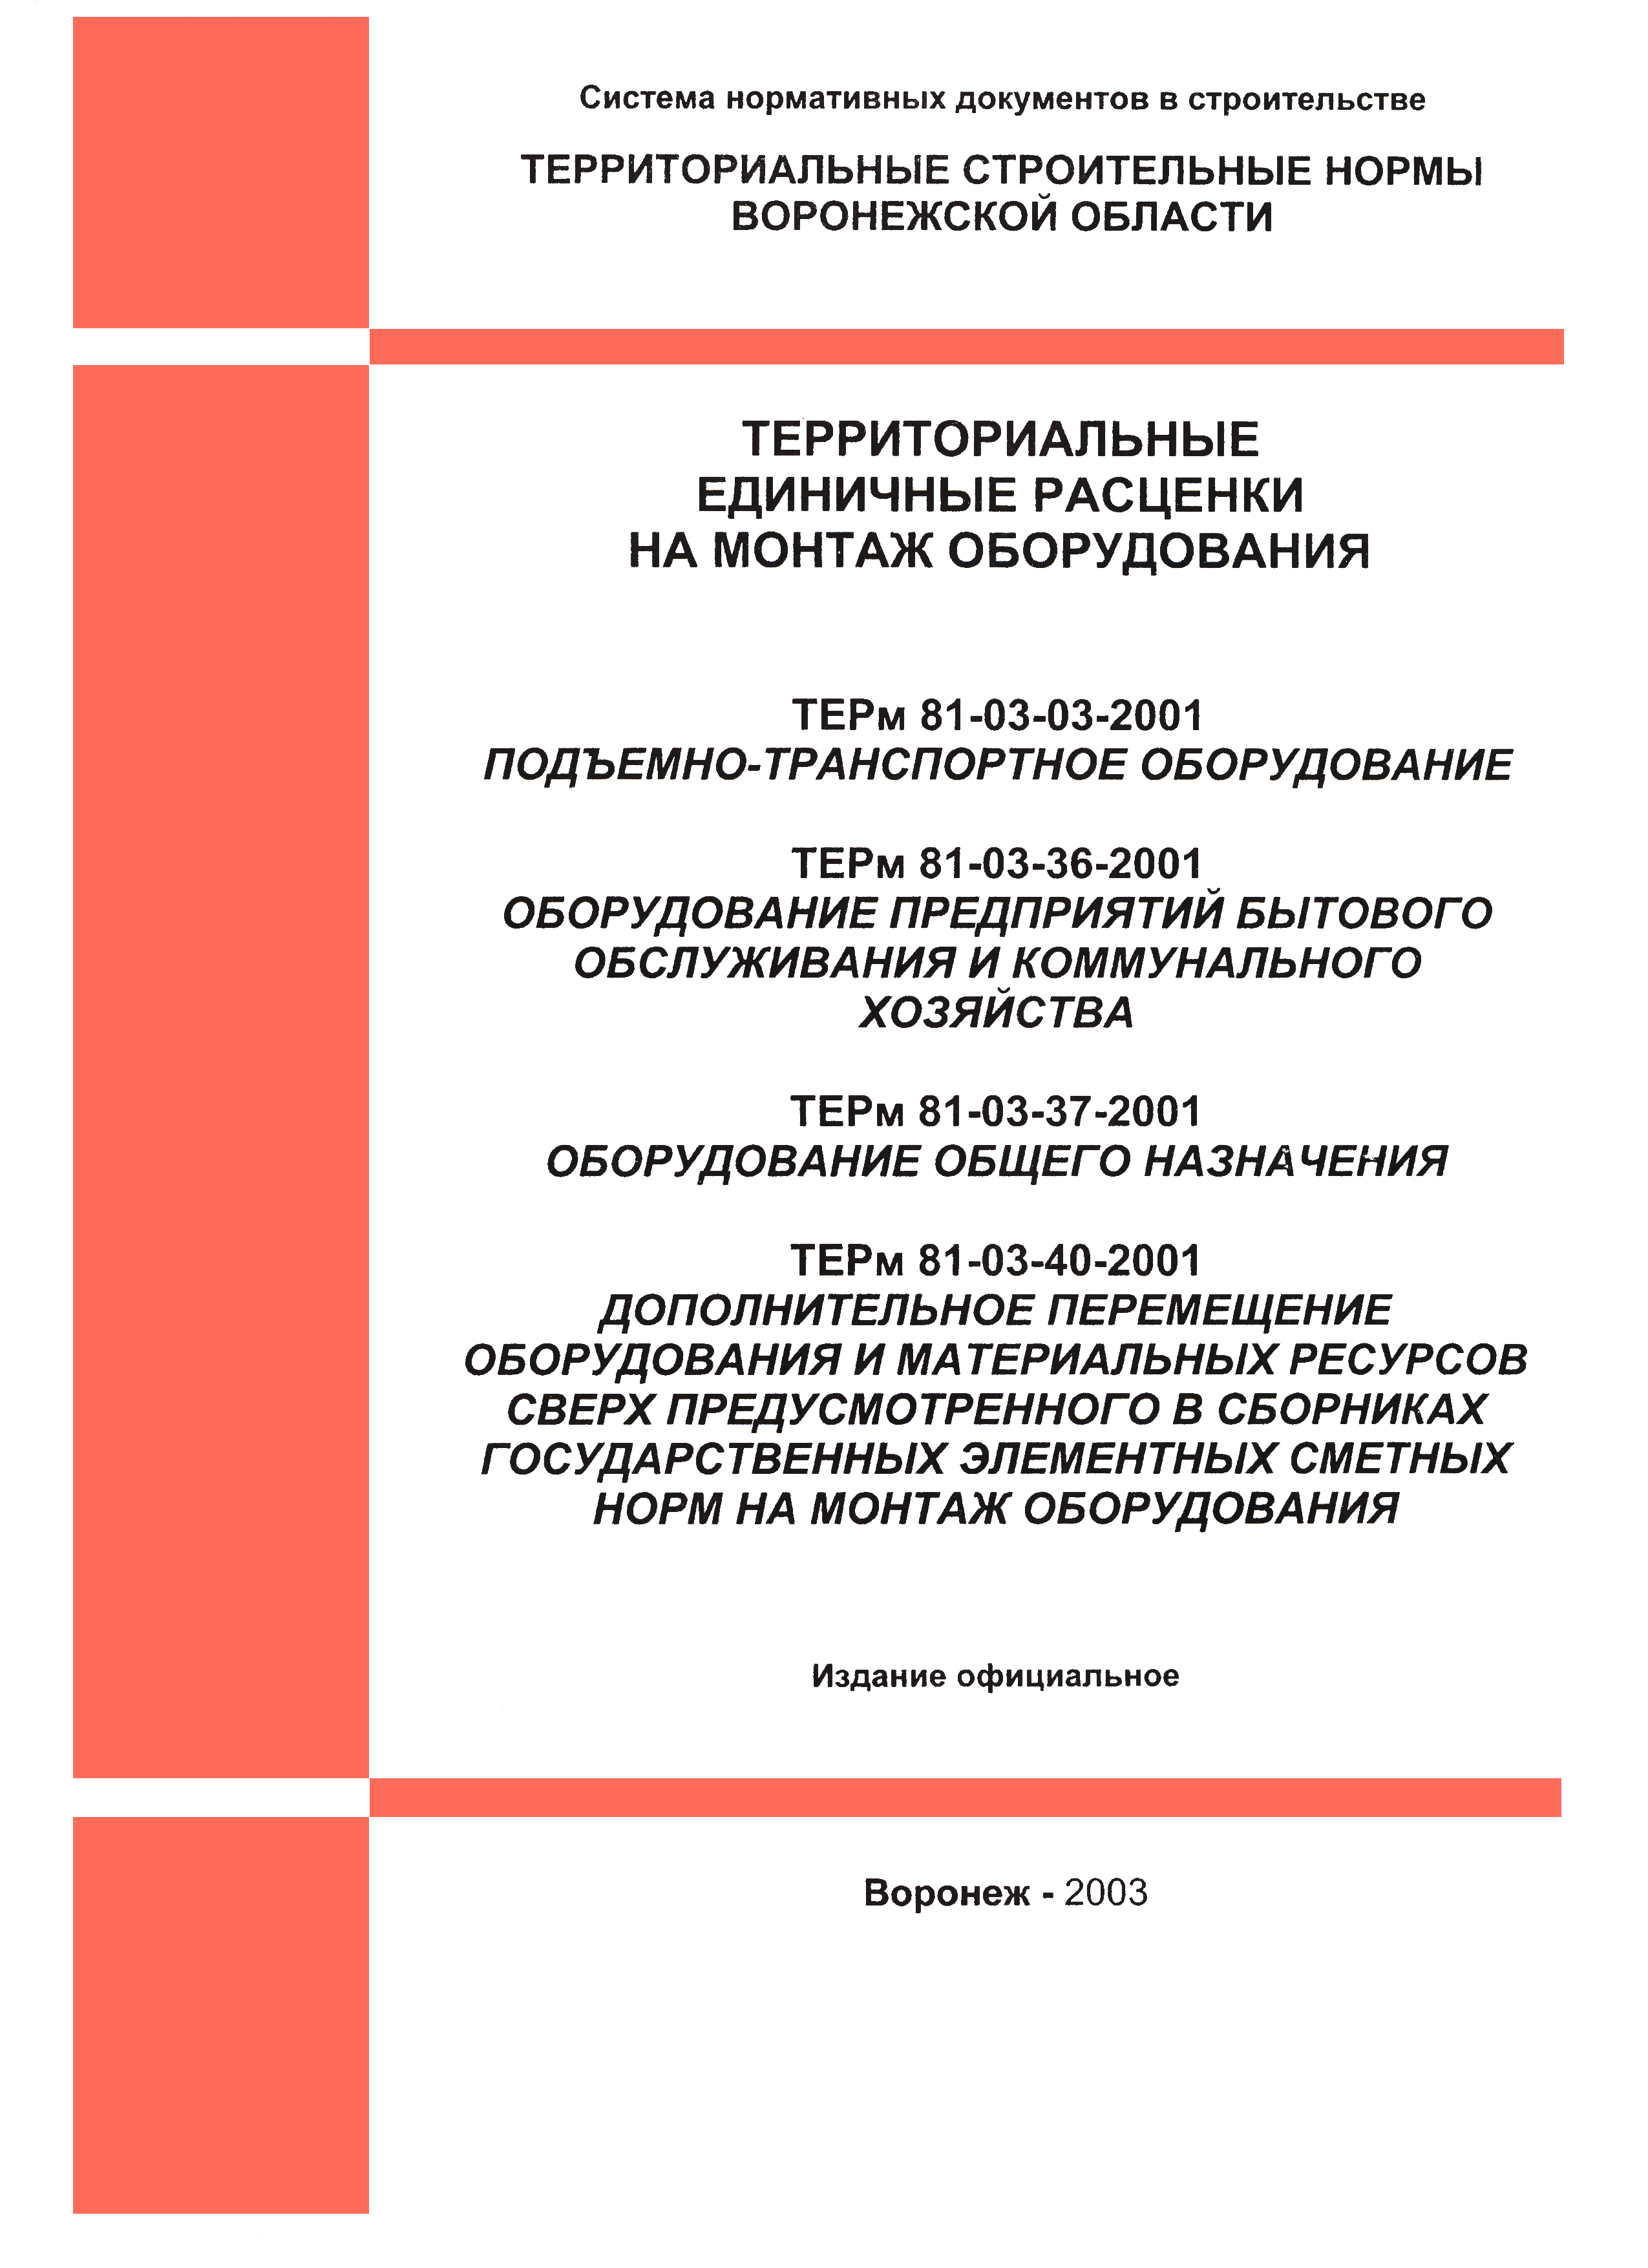 ТЕРм Воронежская область 81-03-40-2001